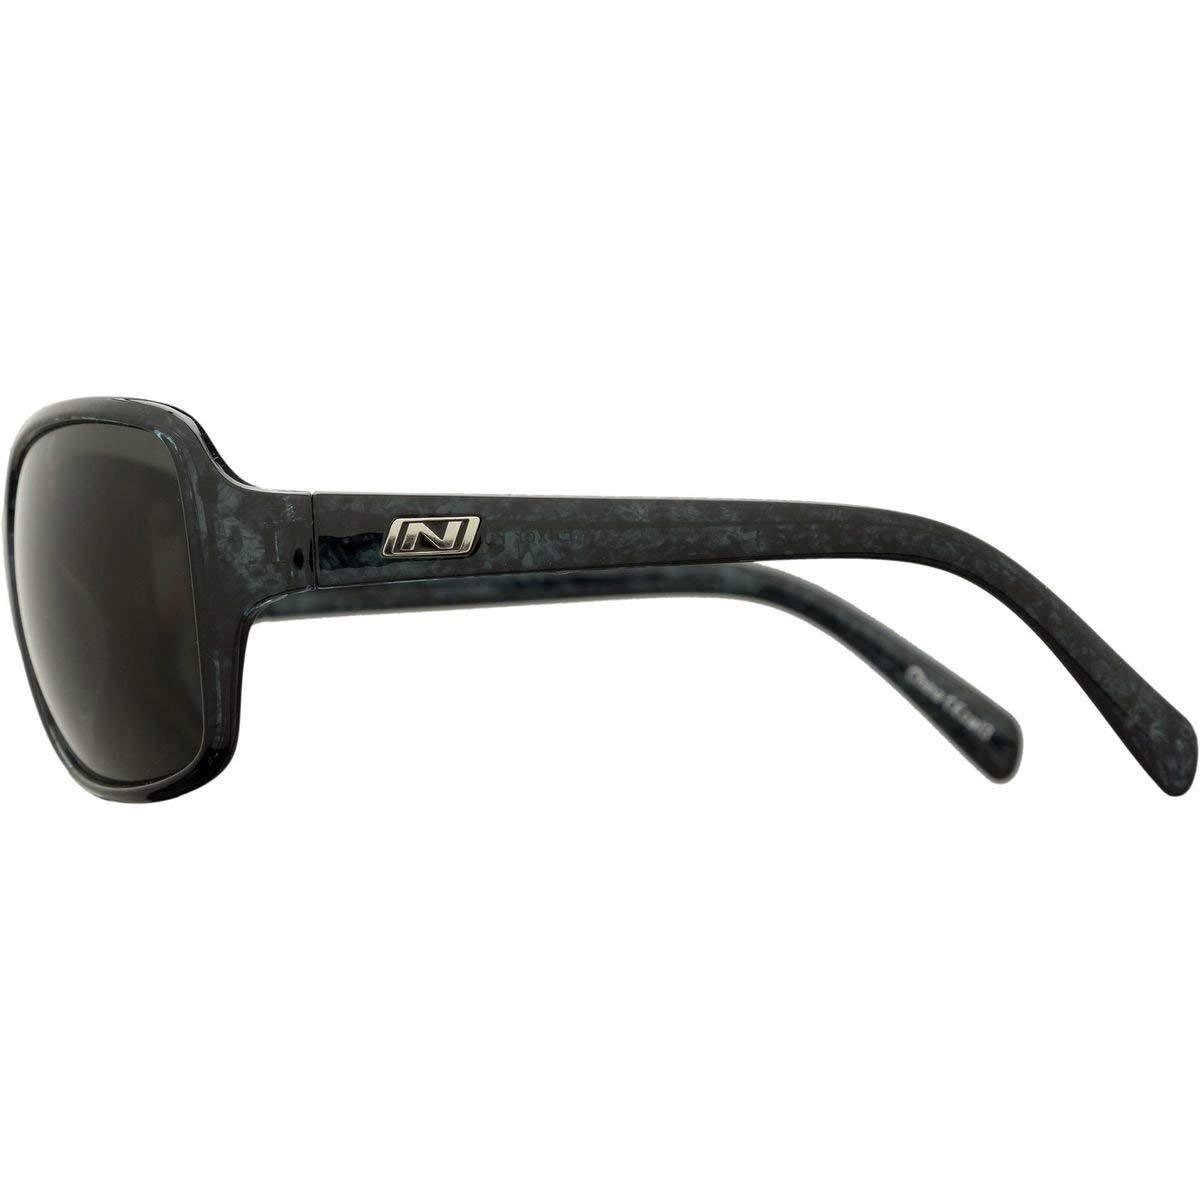 Optic Nerve Elixer Sunglasses, Midnight, Polarized Smoke Lens - - image 2 of 2